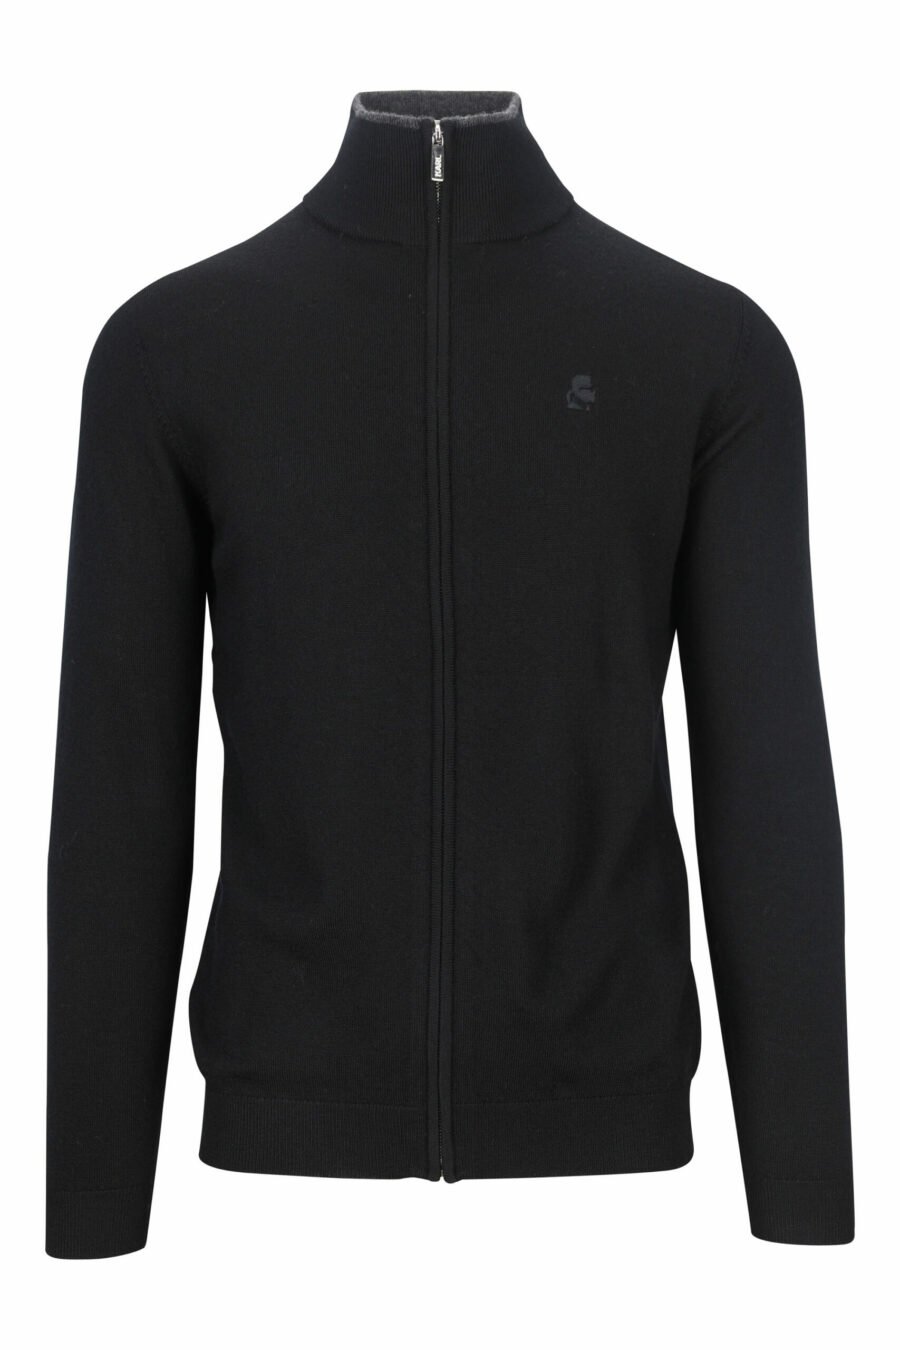 Schwarzes Sweatshirt mit Reißverschluss und monochromem Minilogo - 4062226635752 skaliert